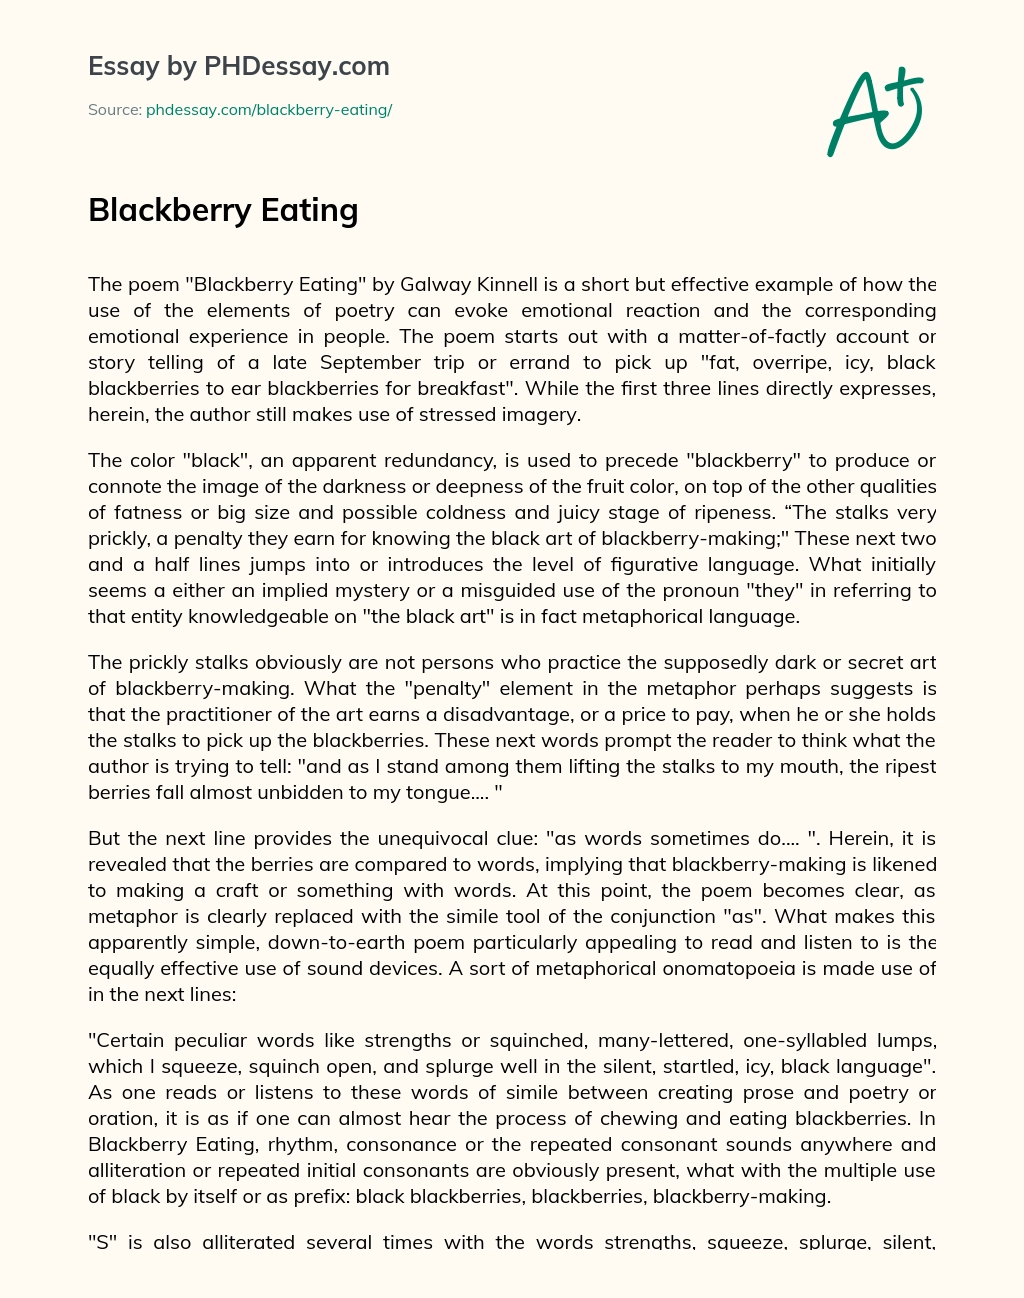 Blackberry Eating essay